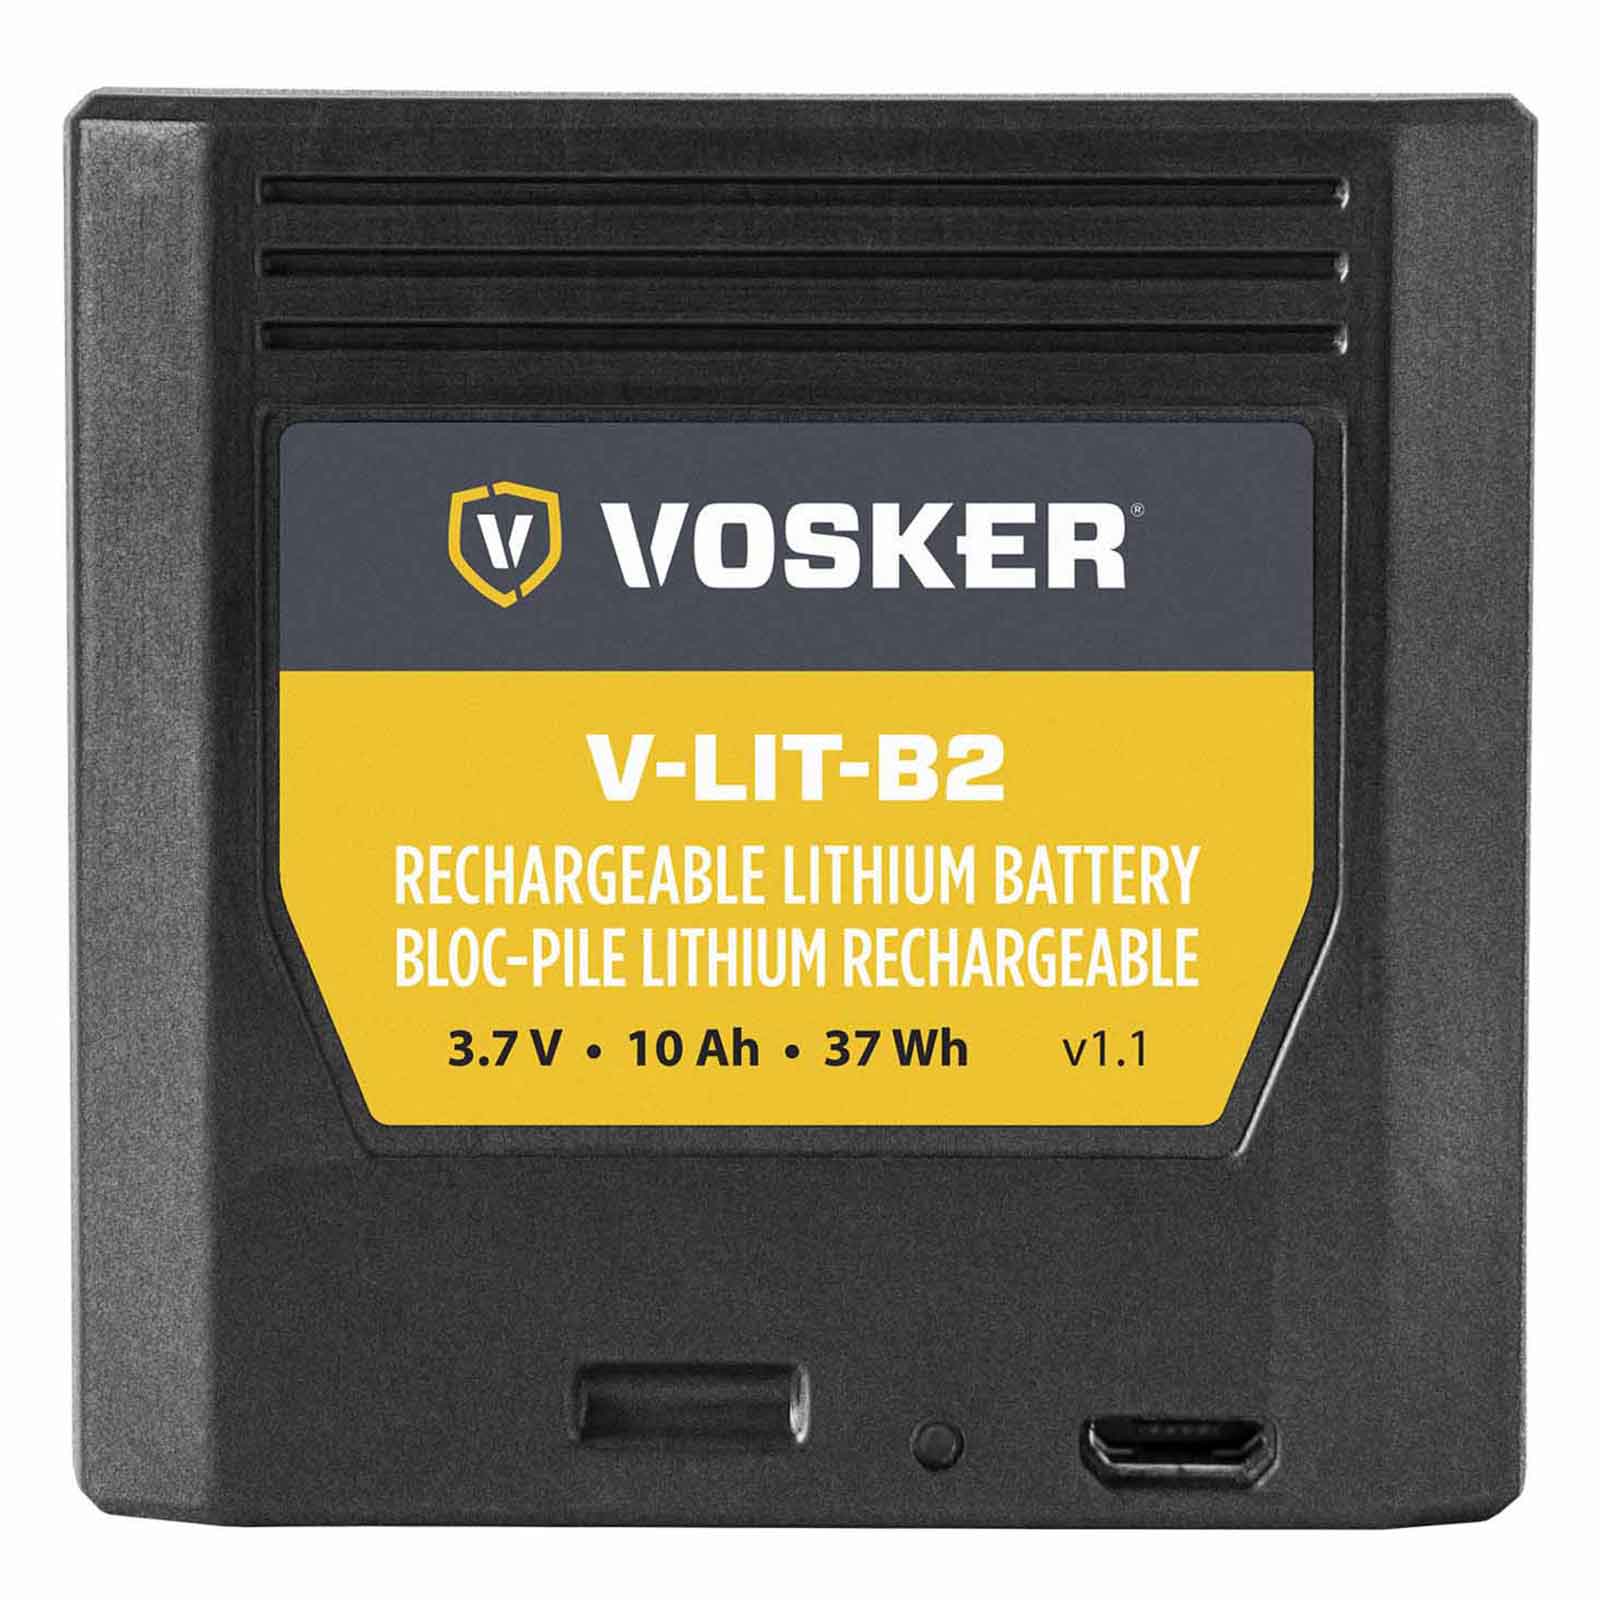 Vosker V-LIT-B2 litiumbatteri